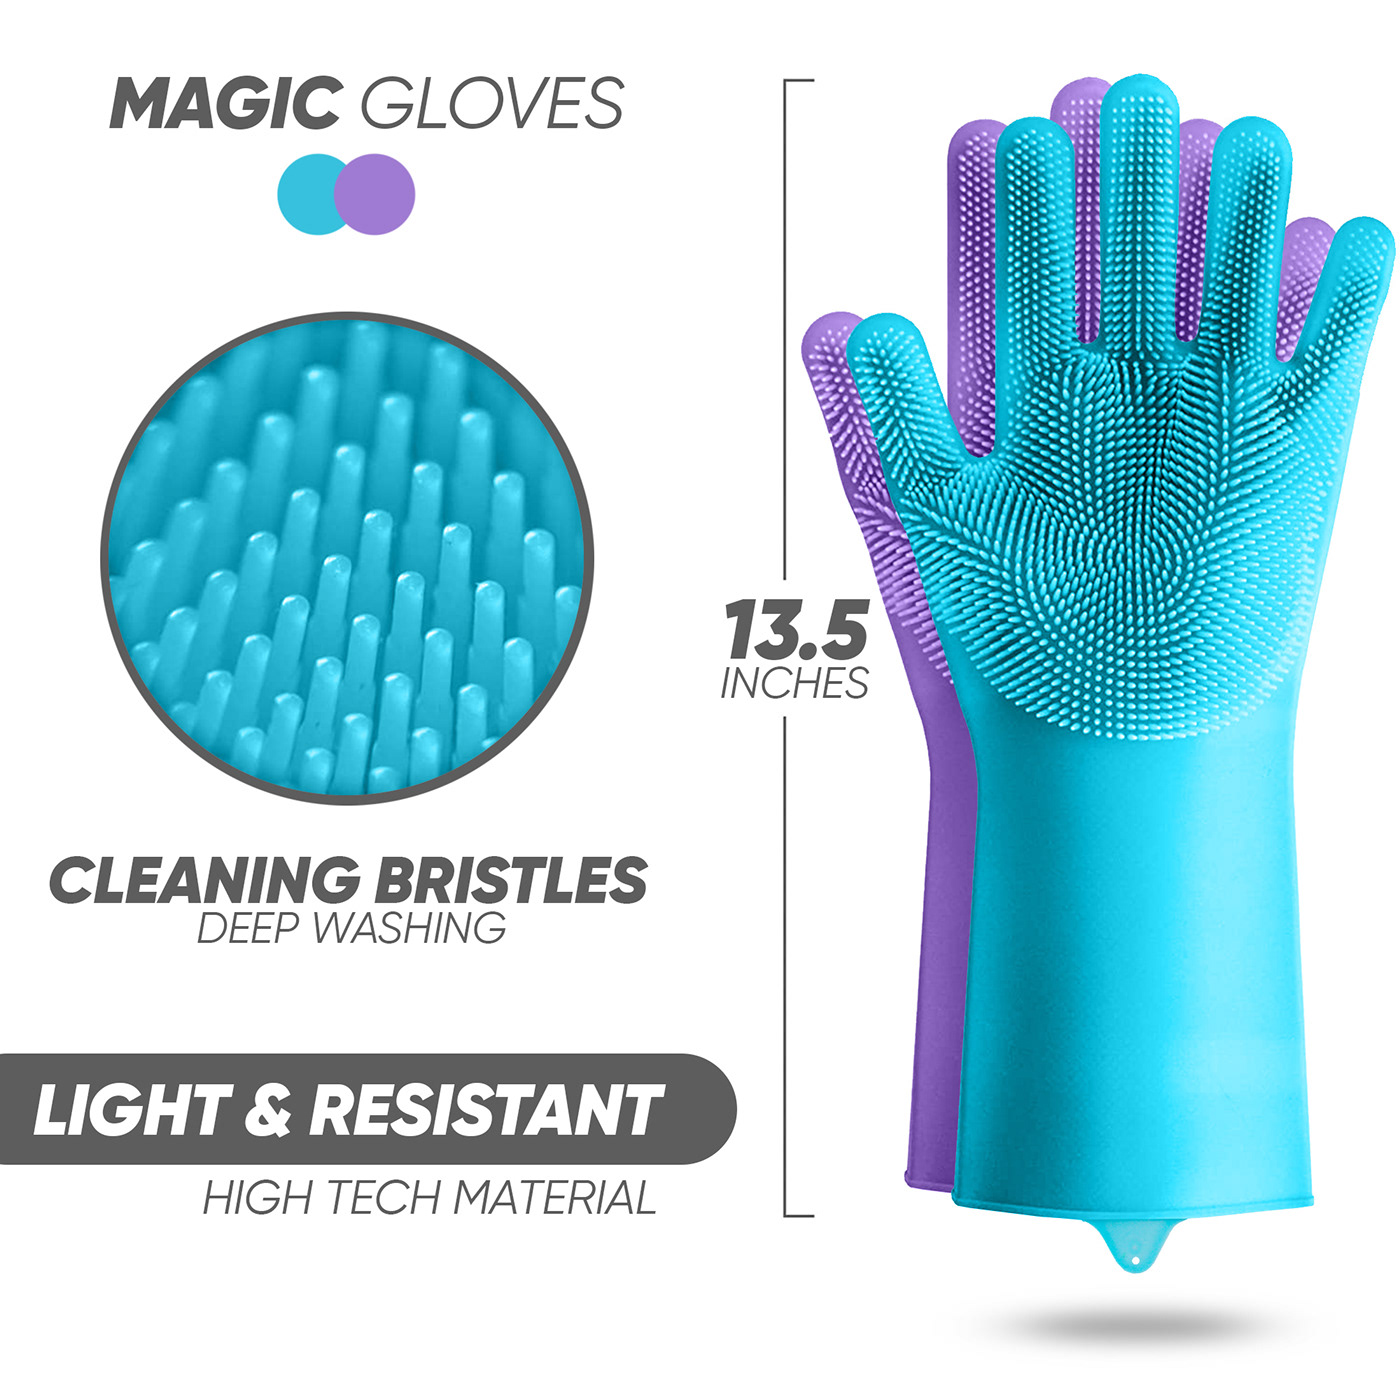 Amazon Amazon Listing Amazon Product Dish washing gloves hand gloves product listing image Product Photography